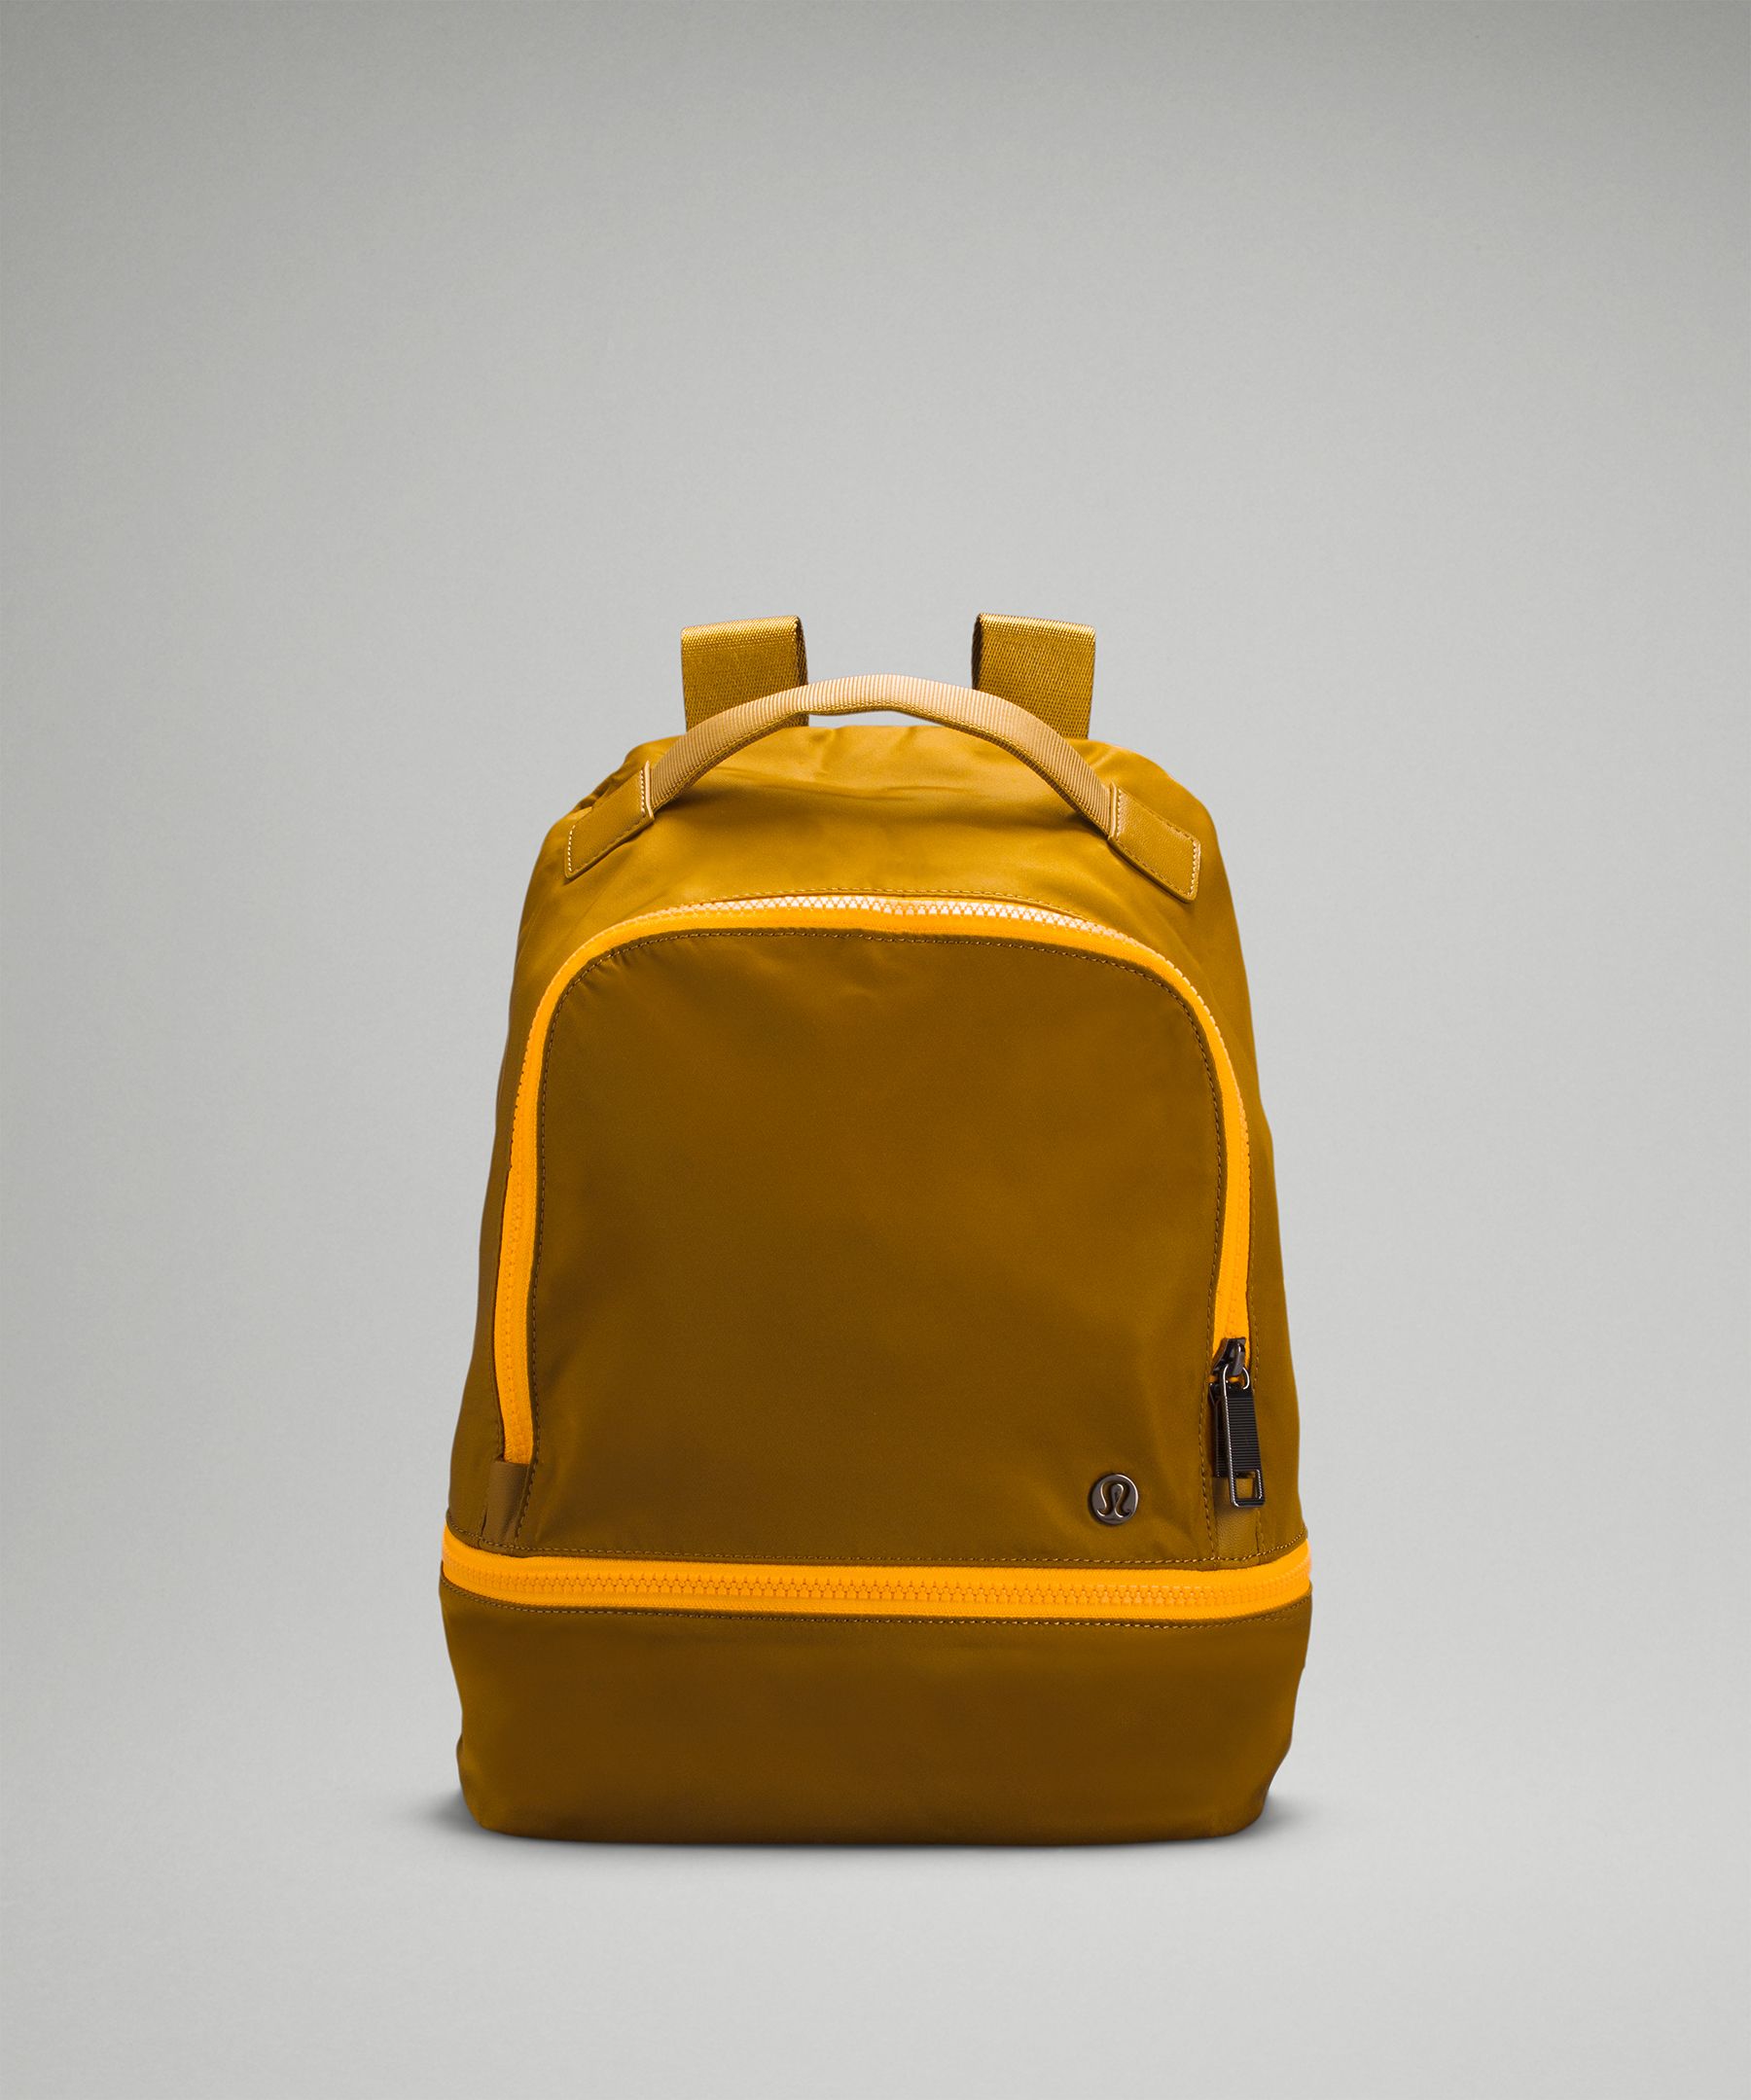 Lululemon City Adventurer Backpack 10l In Gold Spice